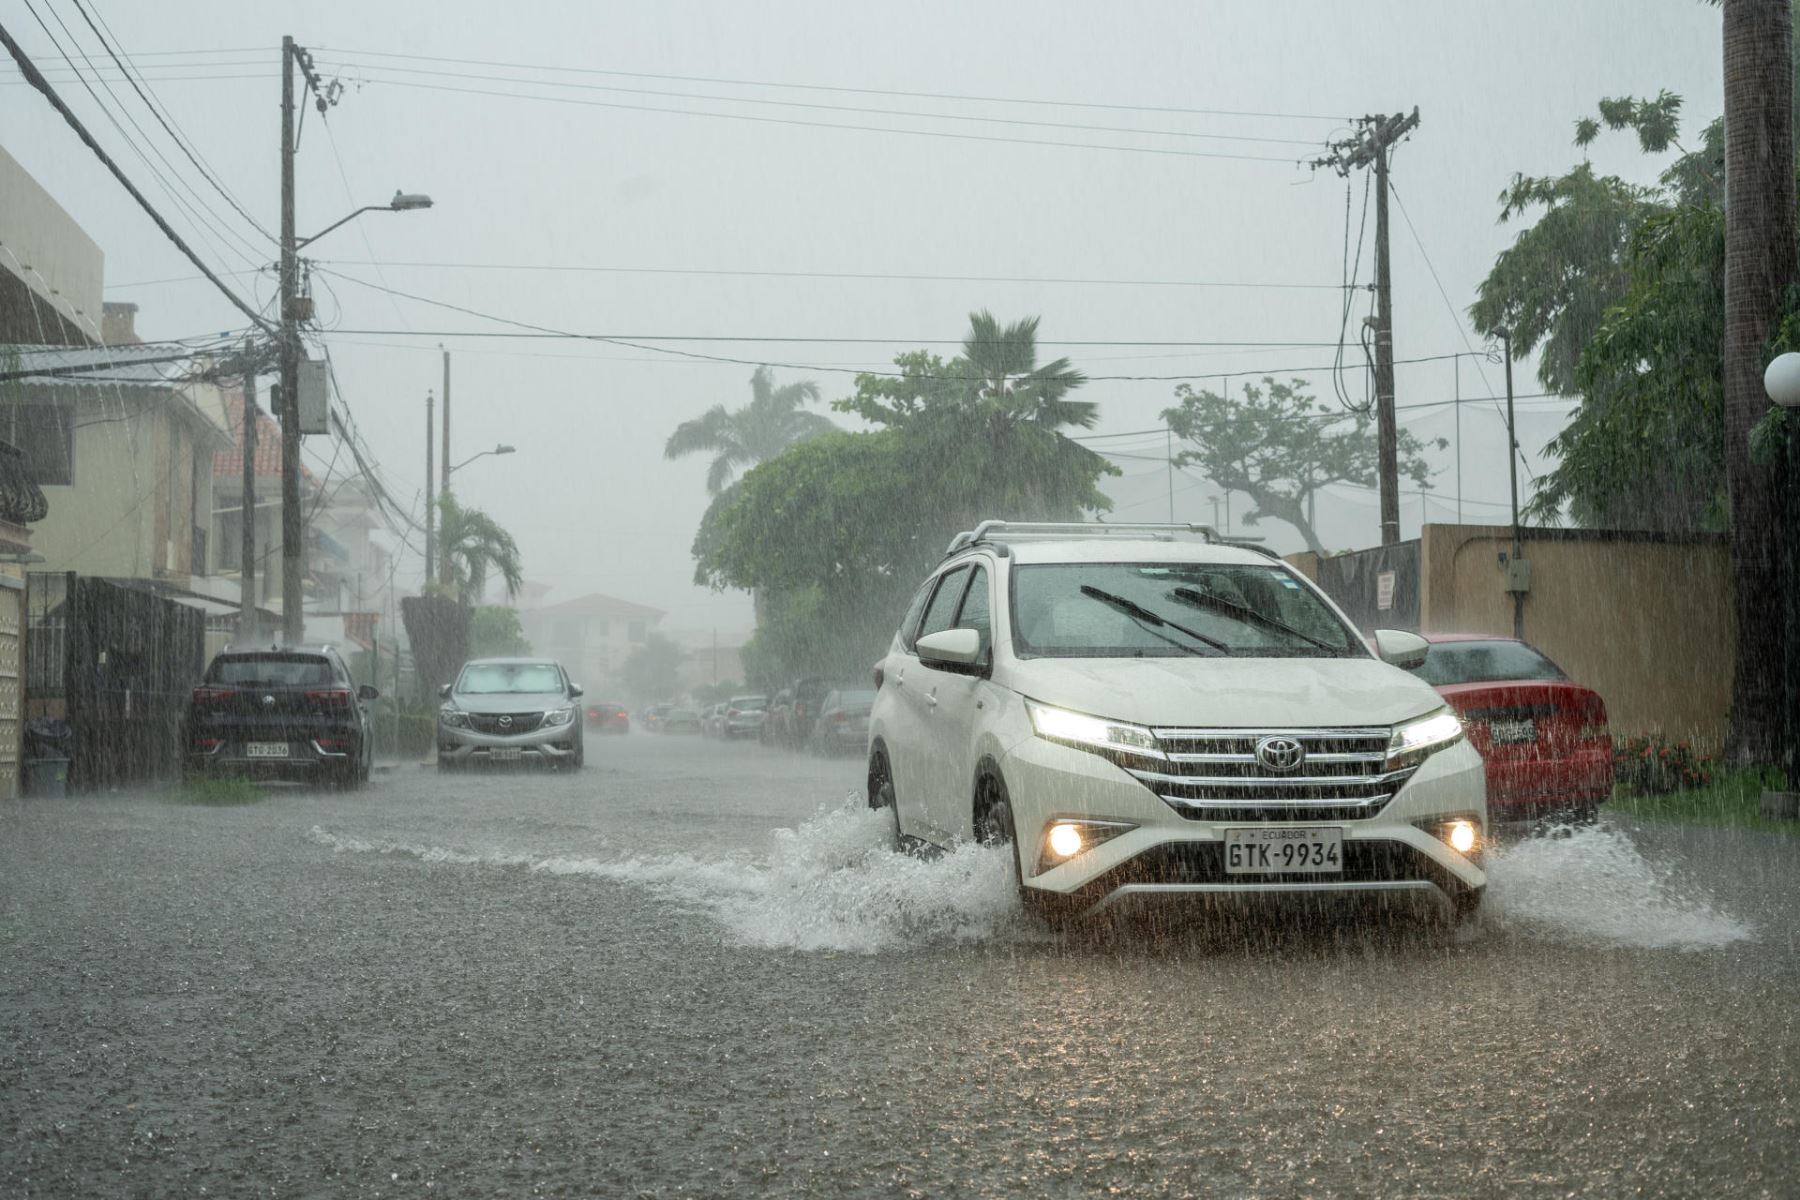 Vehículos transitan por una calle inundada debido a las fuertes lluvias, este miércoles en Samborondon (Ecuador).
Foto: EFE